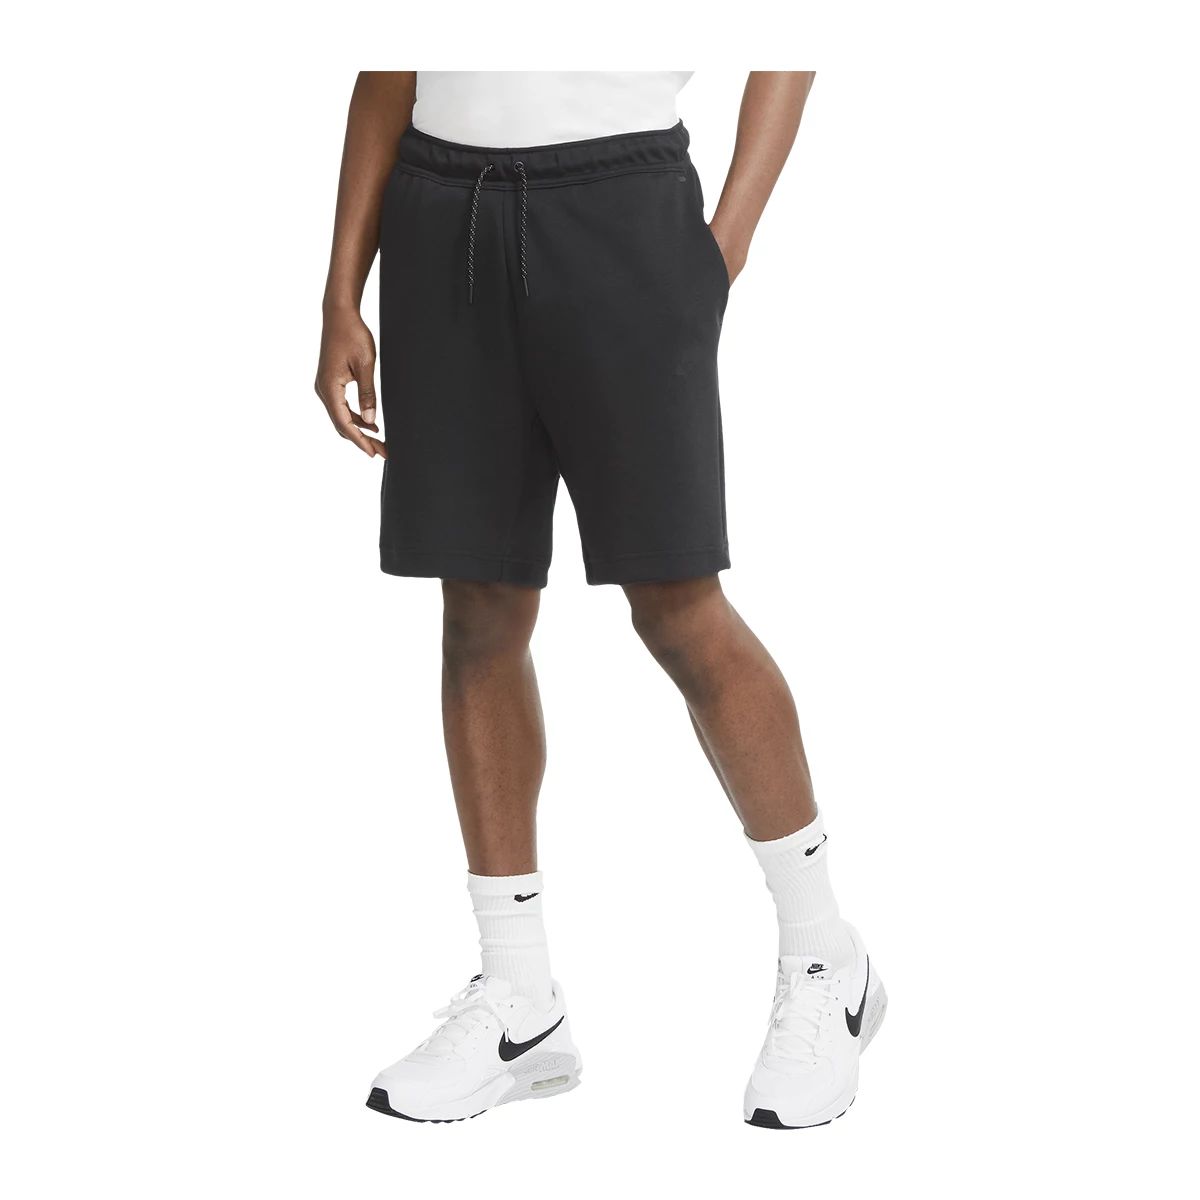 Nike Men's Tech Fleece Shorts Sportchek